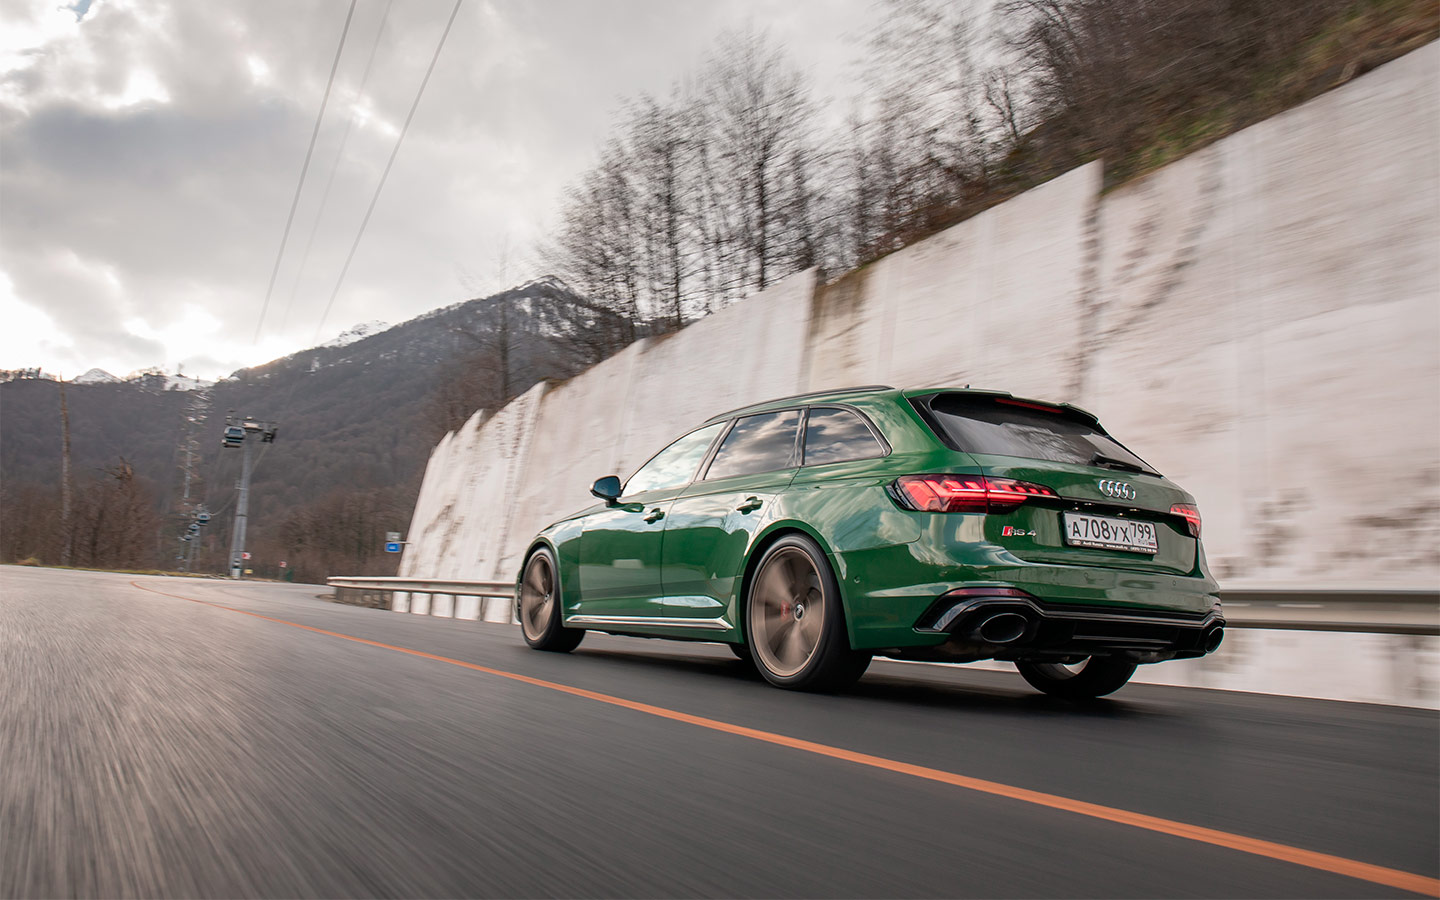 Audi RS 5 в версии купе на 150 кг легче универсала RS 4, да и колесная база меньше на целых 60 миллиметров. За счет этого двухдверка ощущается более юркой и подвижной, но по-настоящему заметно это только при очень быстрой езде по серпантинам.